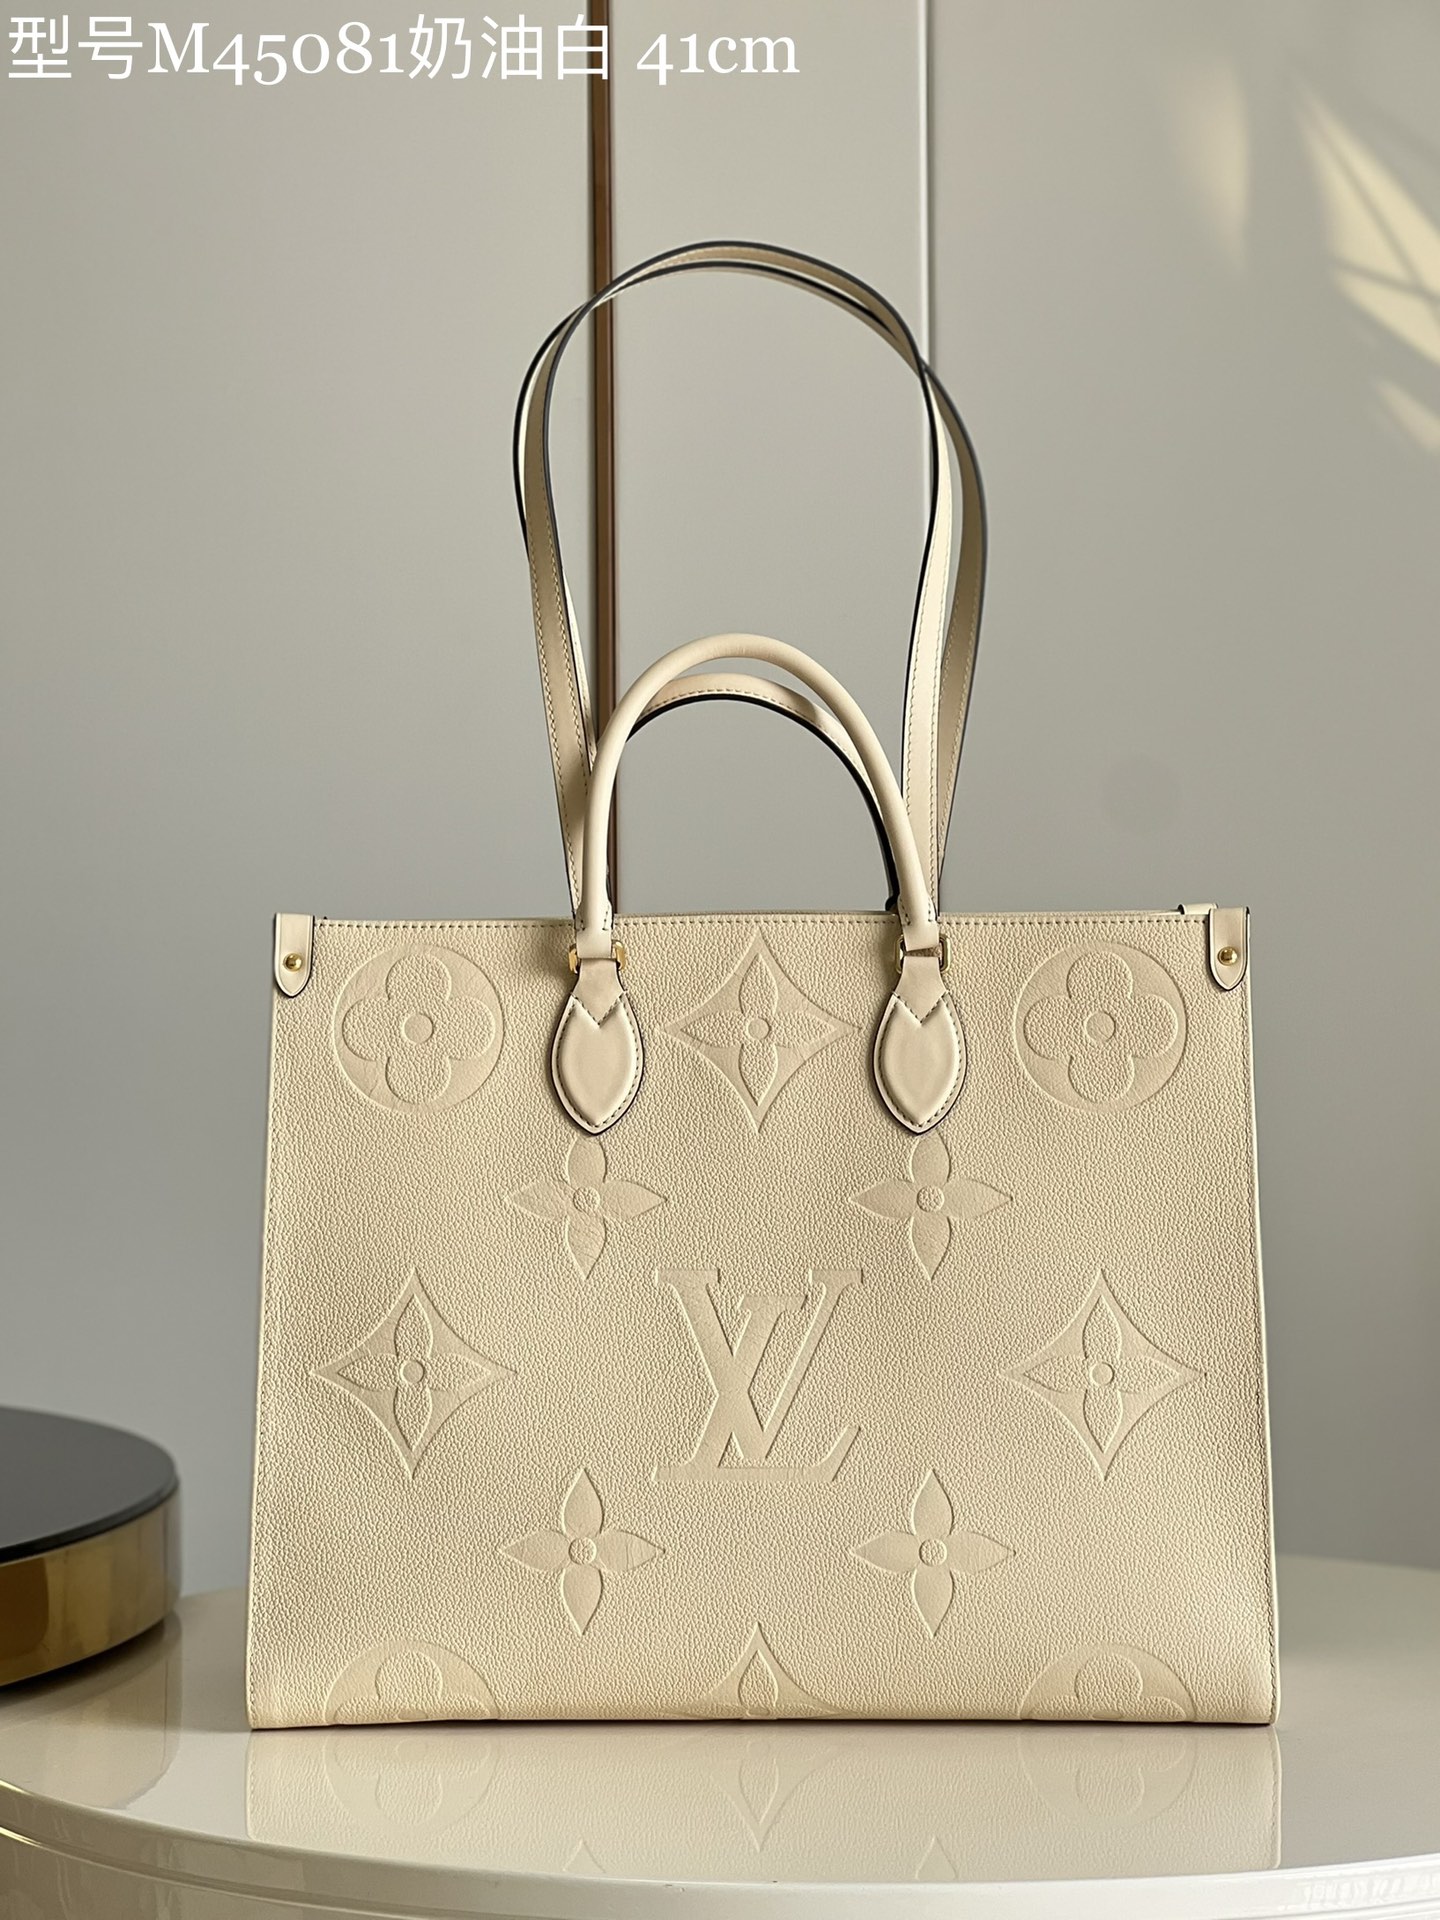 Louis Vuitton LV Onthego Bags Handbags White Printing Mini M45081